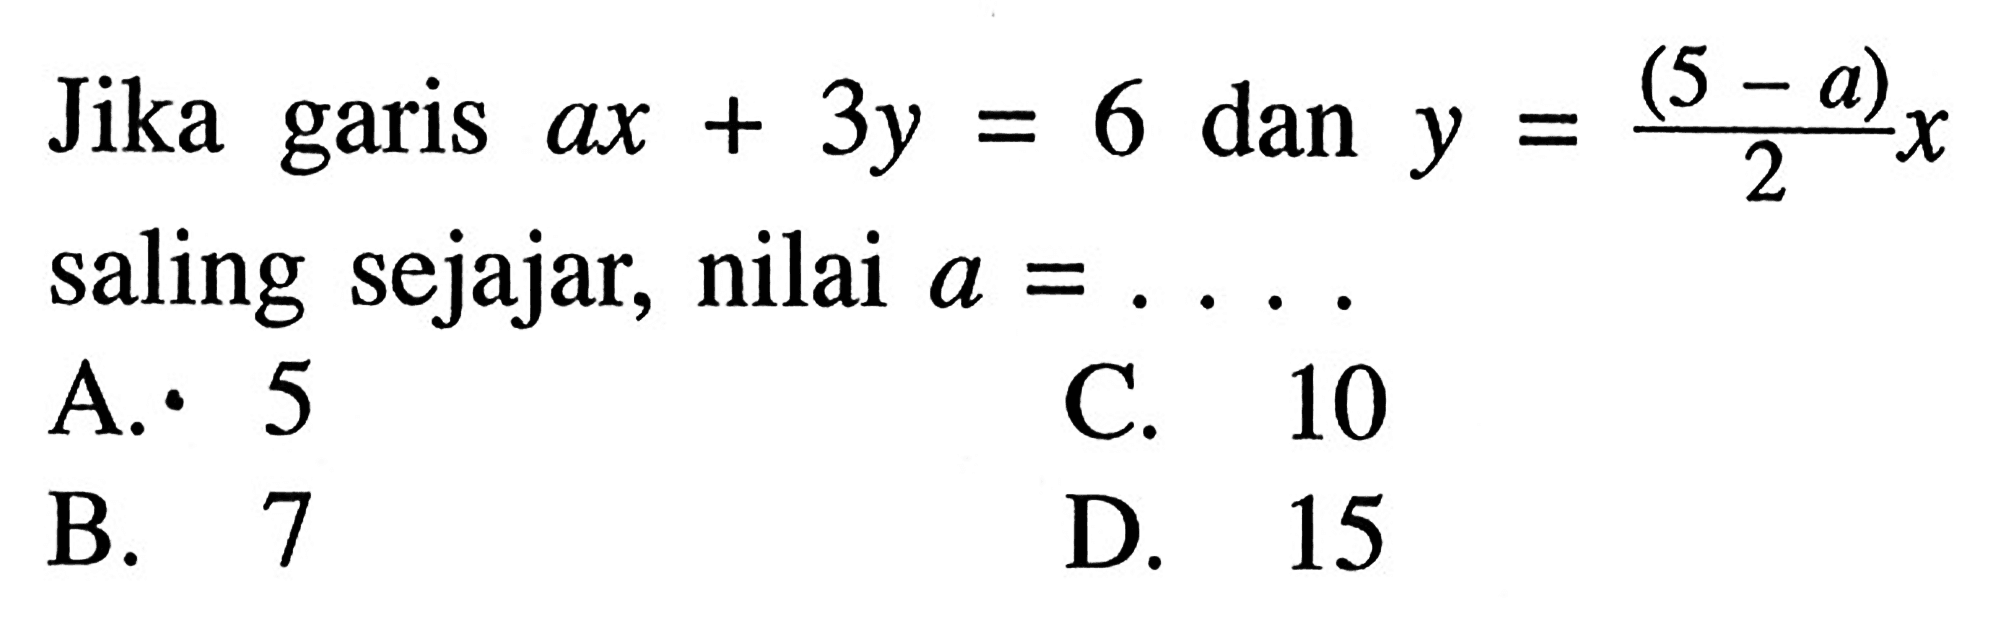 Jika garis ax + 3y = 6 dan y = (5 - a)/2 x saling sejajar, nilai a =...